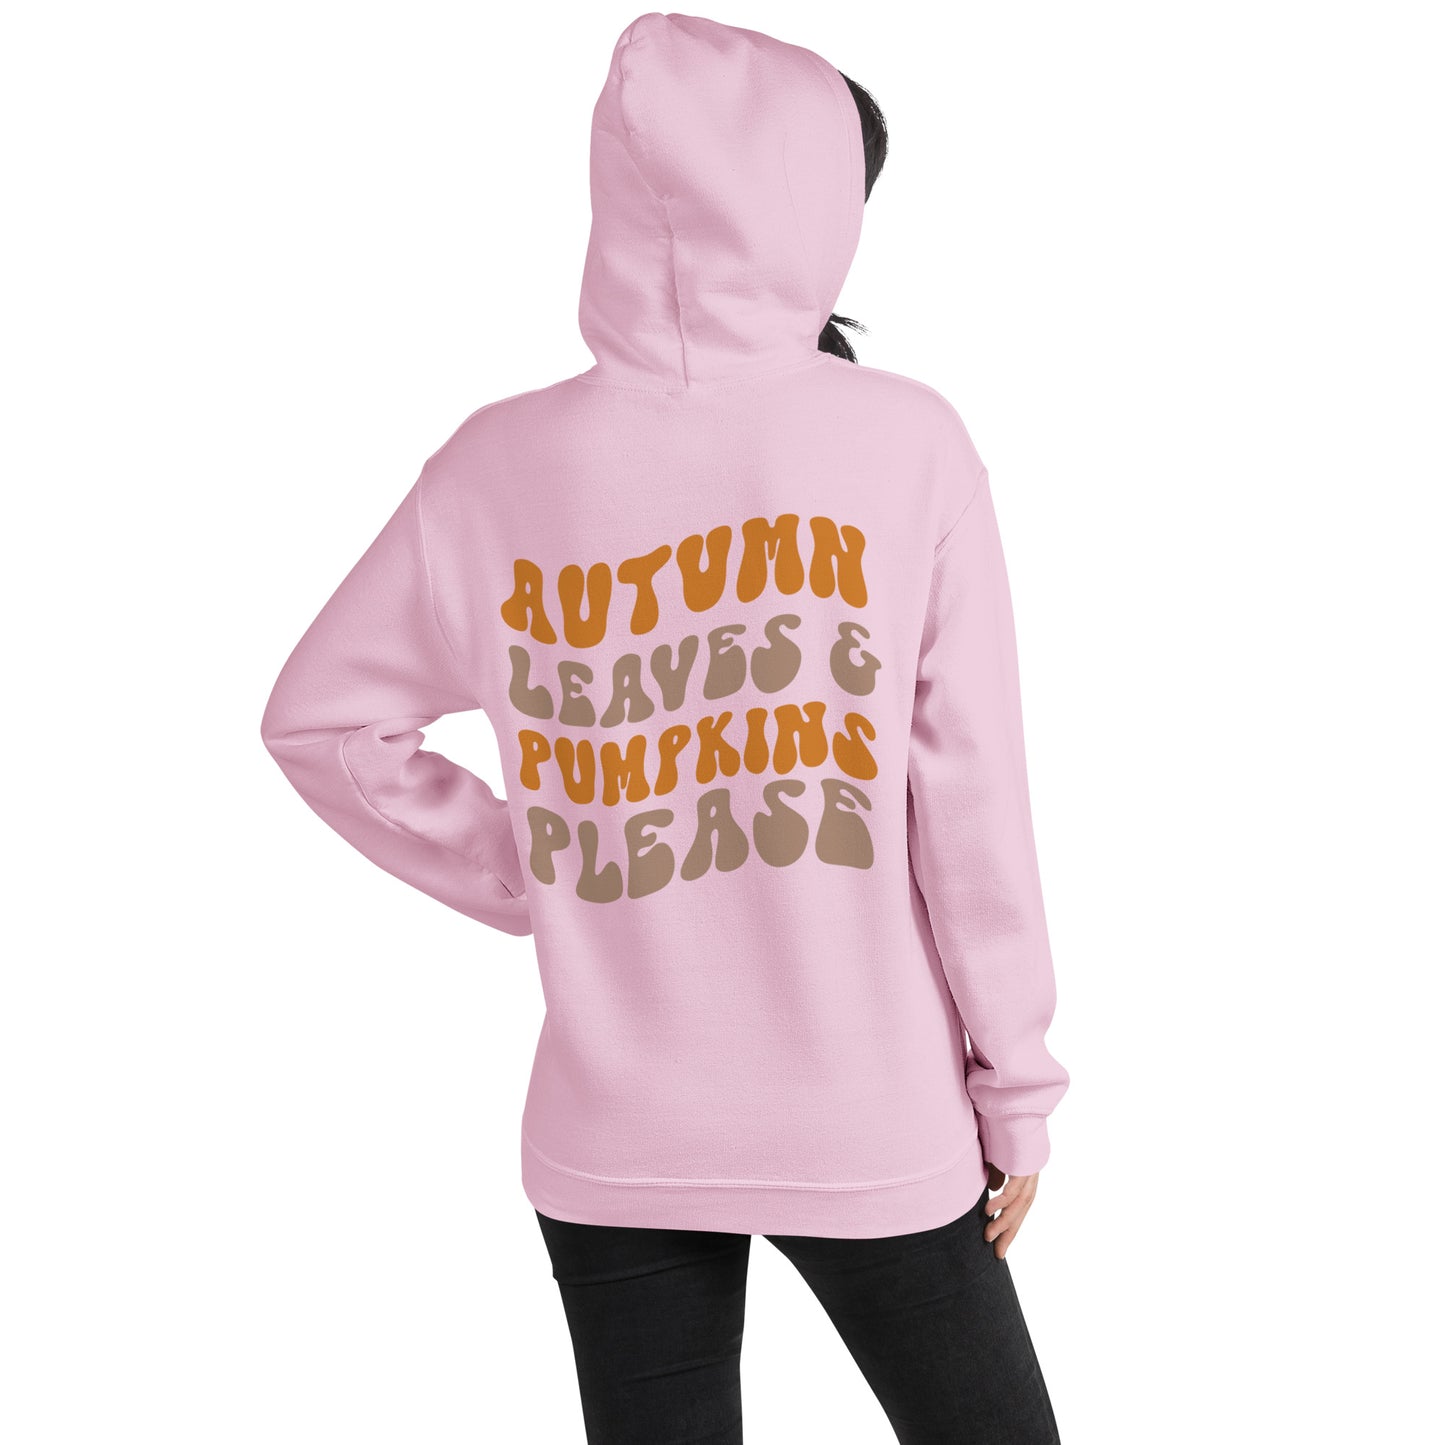 Autumn Leaves & Pumpkins Please Hoodie